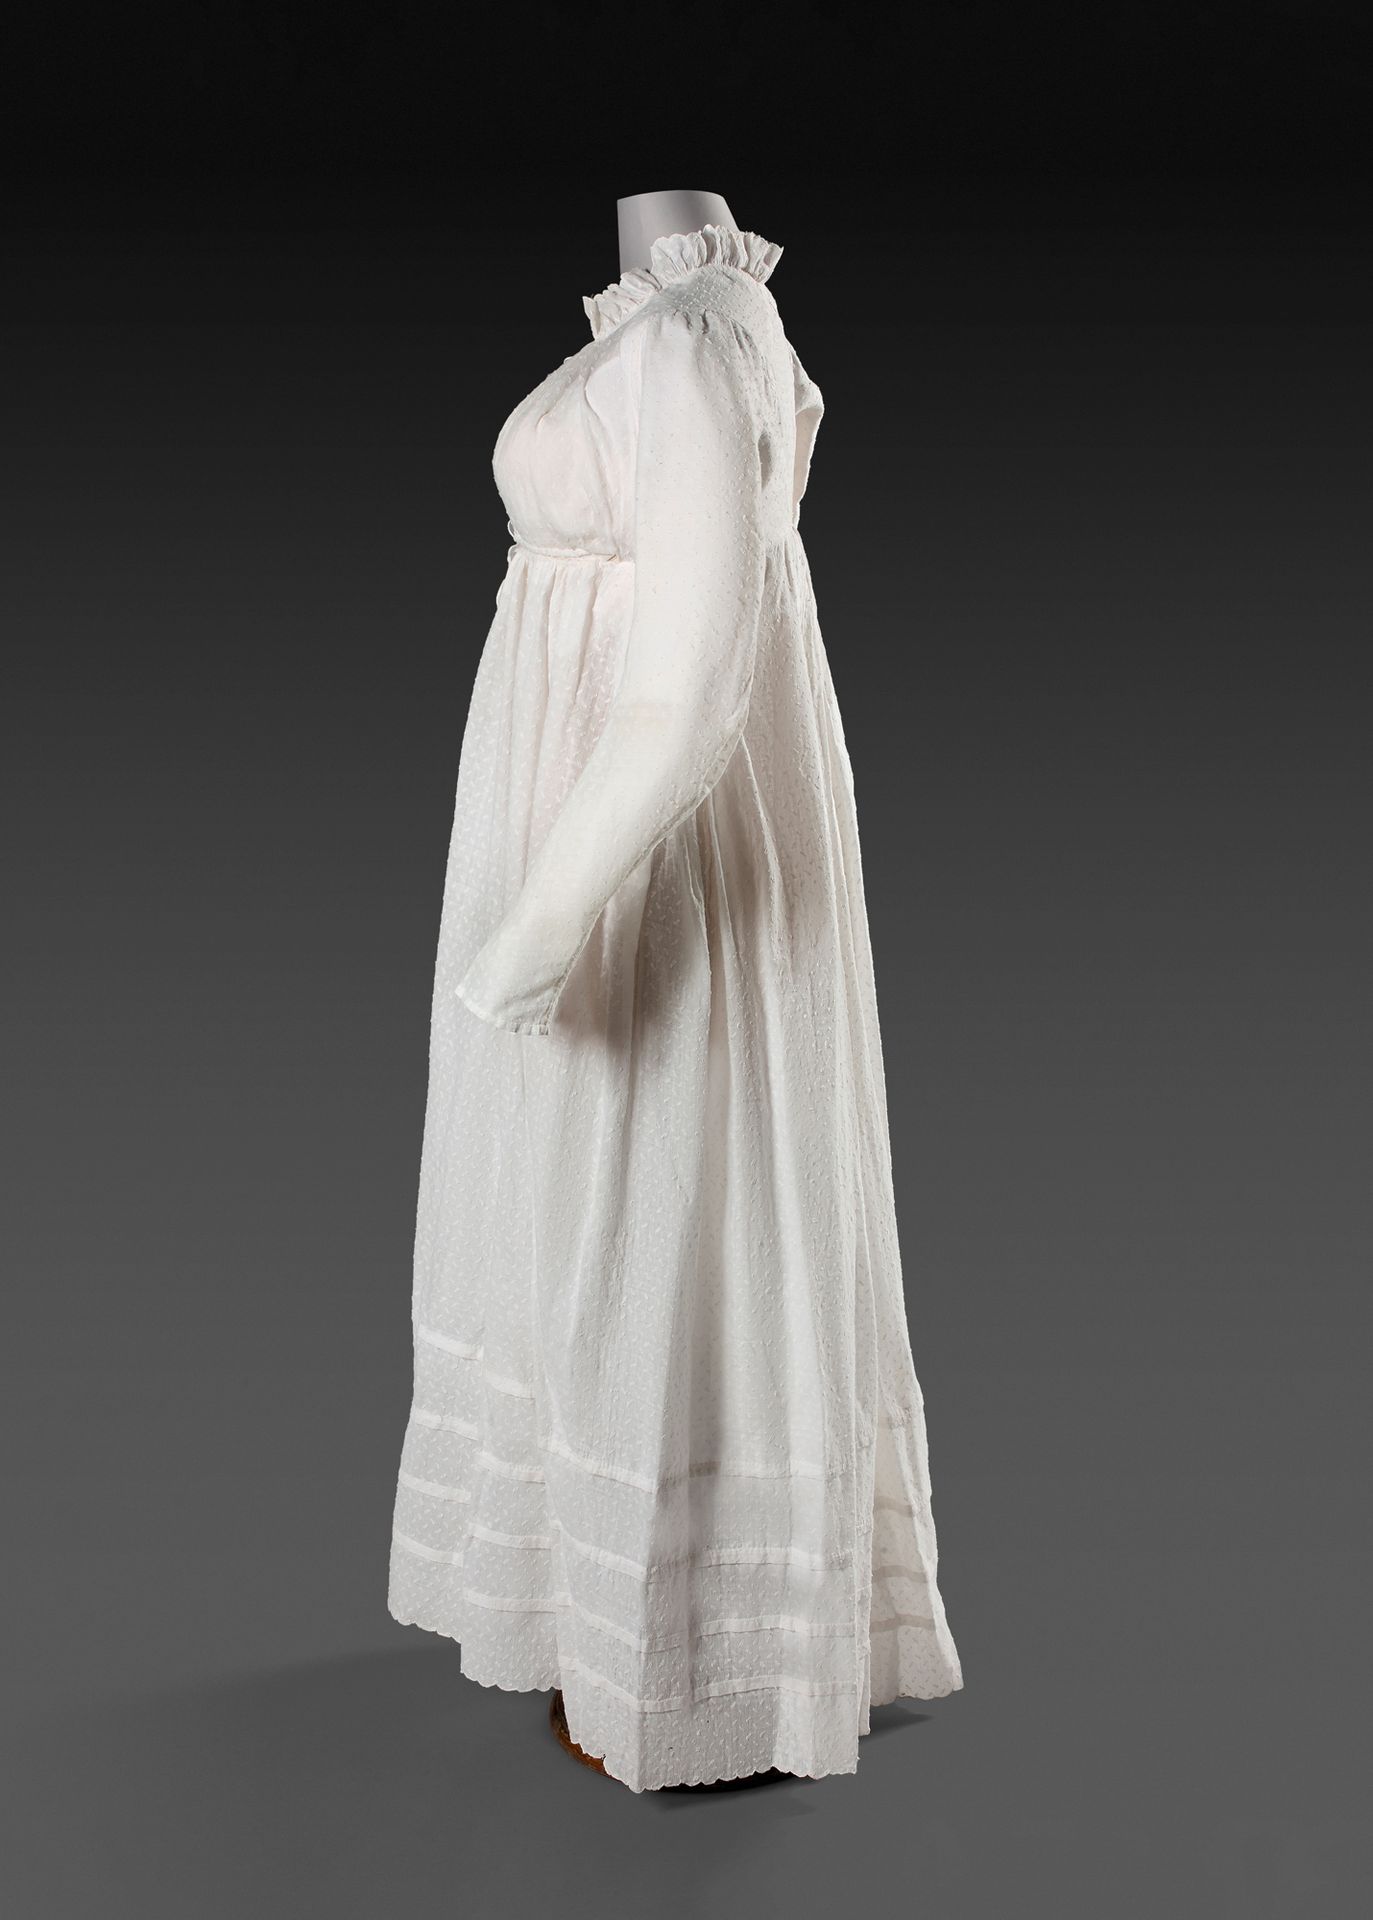 Null Vestido de muselina moldeada, época del Primer Imperio, hacia 1812.
Muselin&hellip;